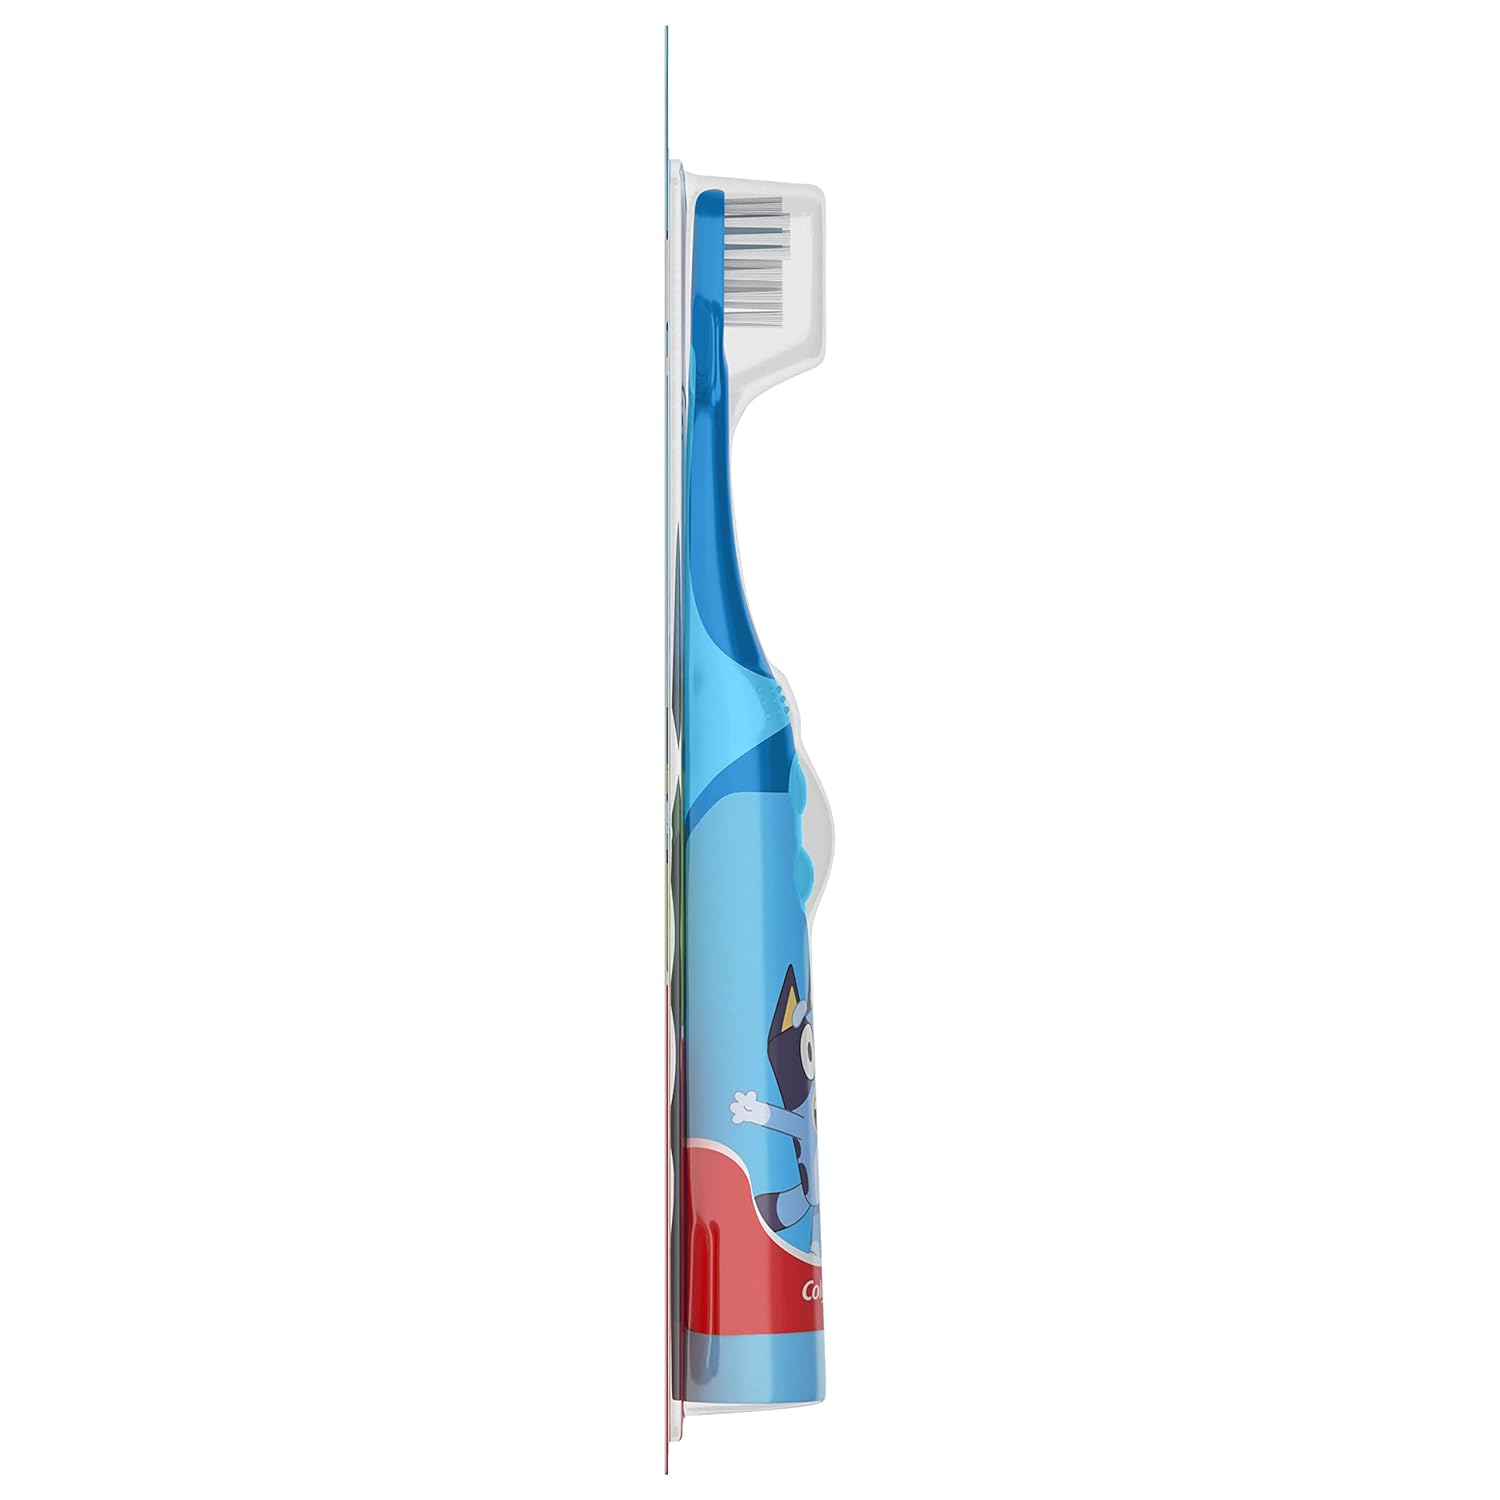 فرشاة أسنان كولجيت كيدز تعمل بالبطارية - أزرق